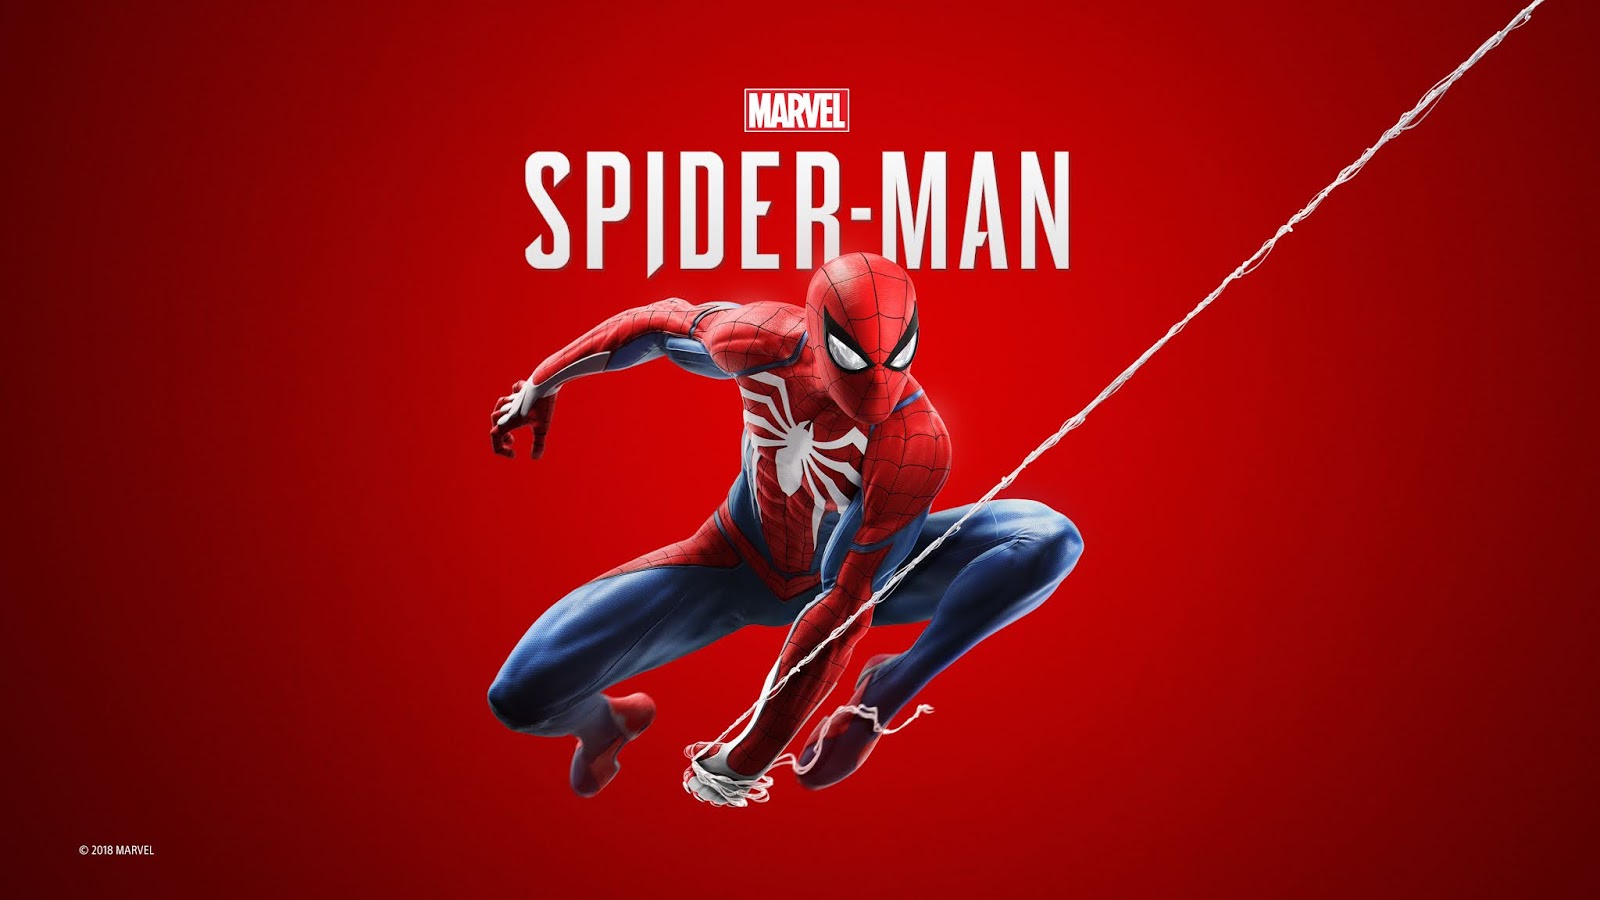 SpiderMan Image And HD Wallpaper ( ͡◉ ͜ʖ ͡◉)